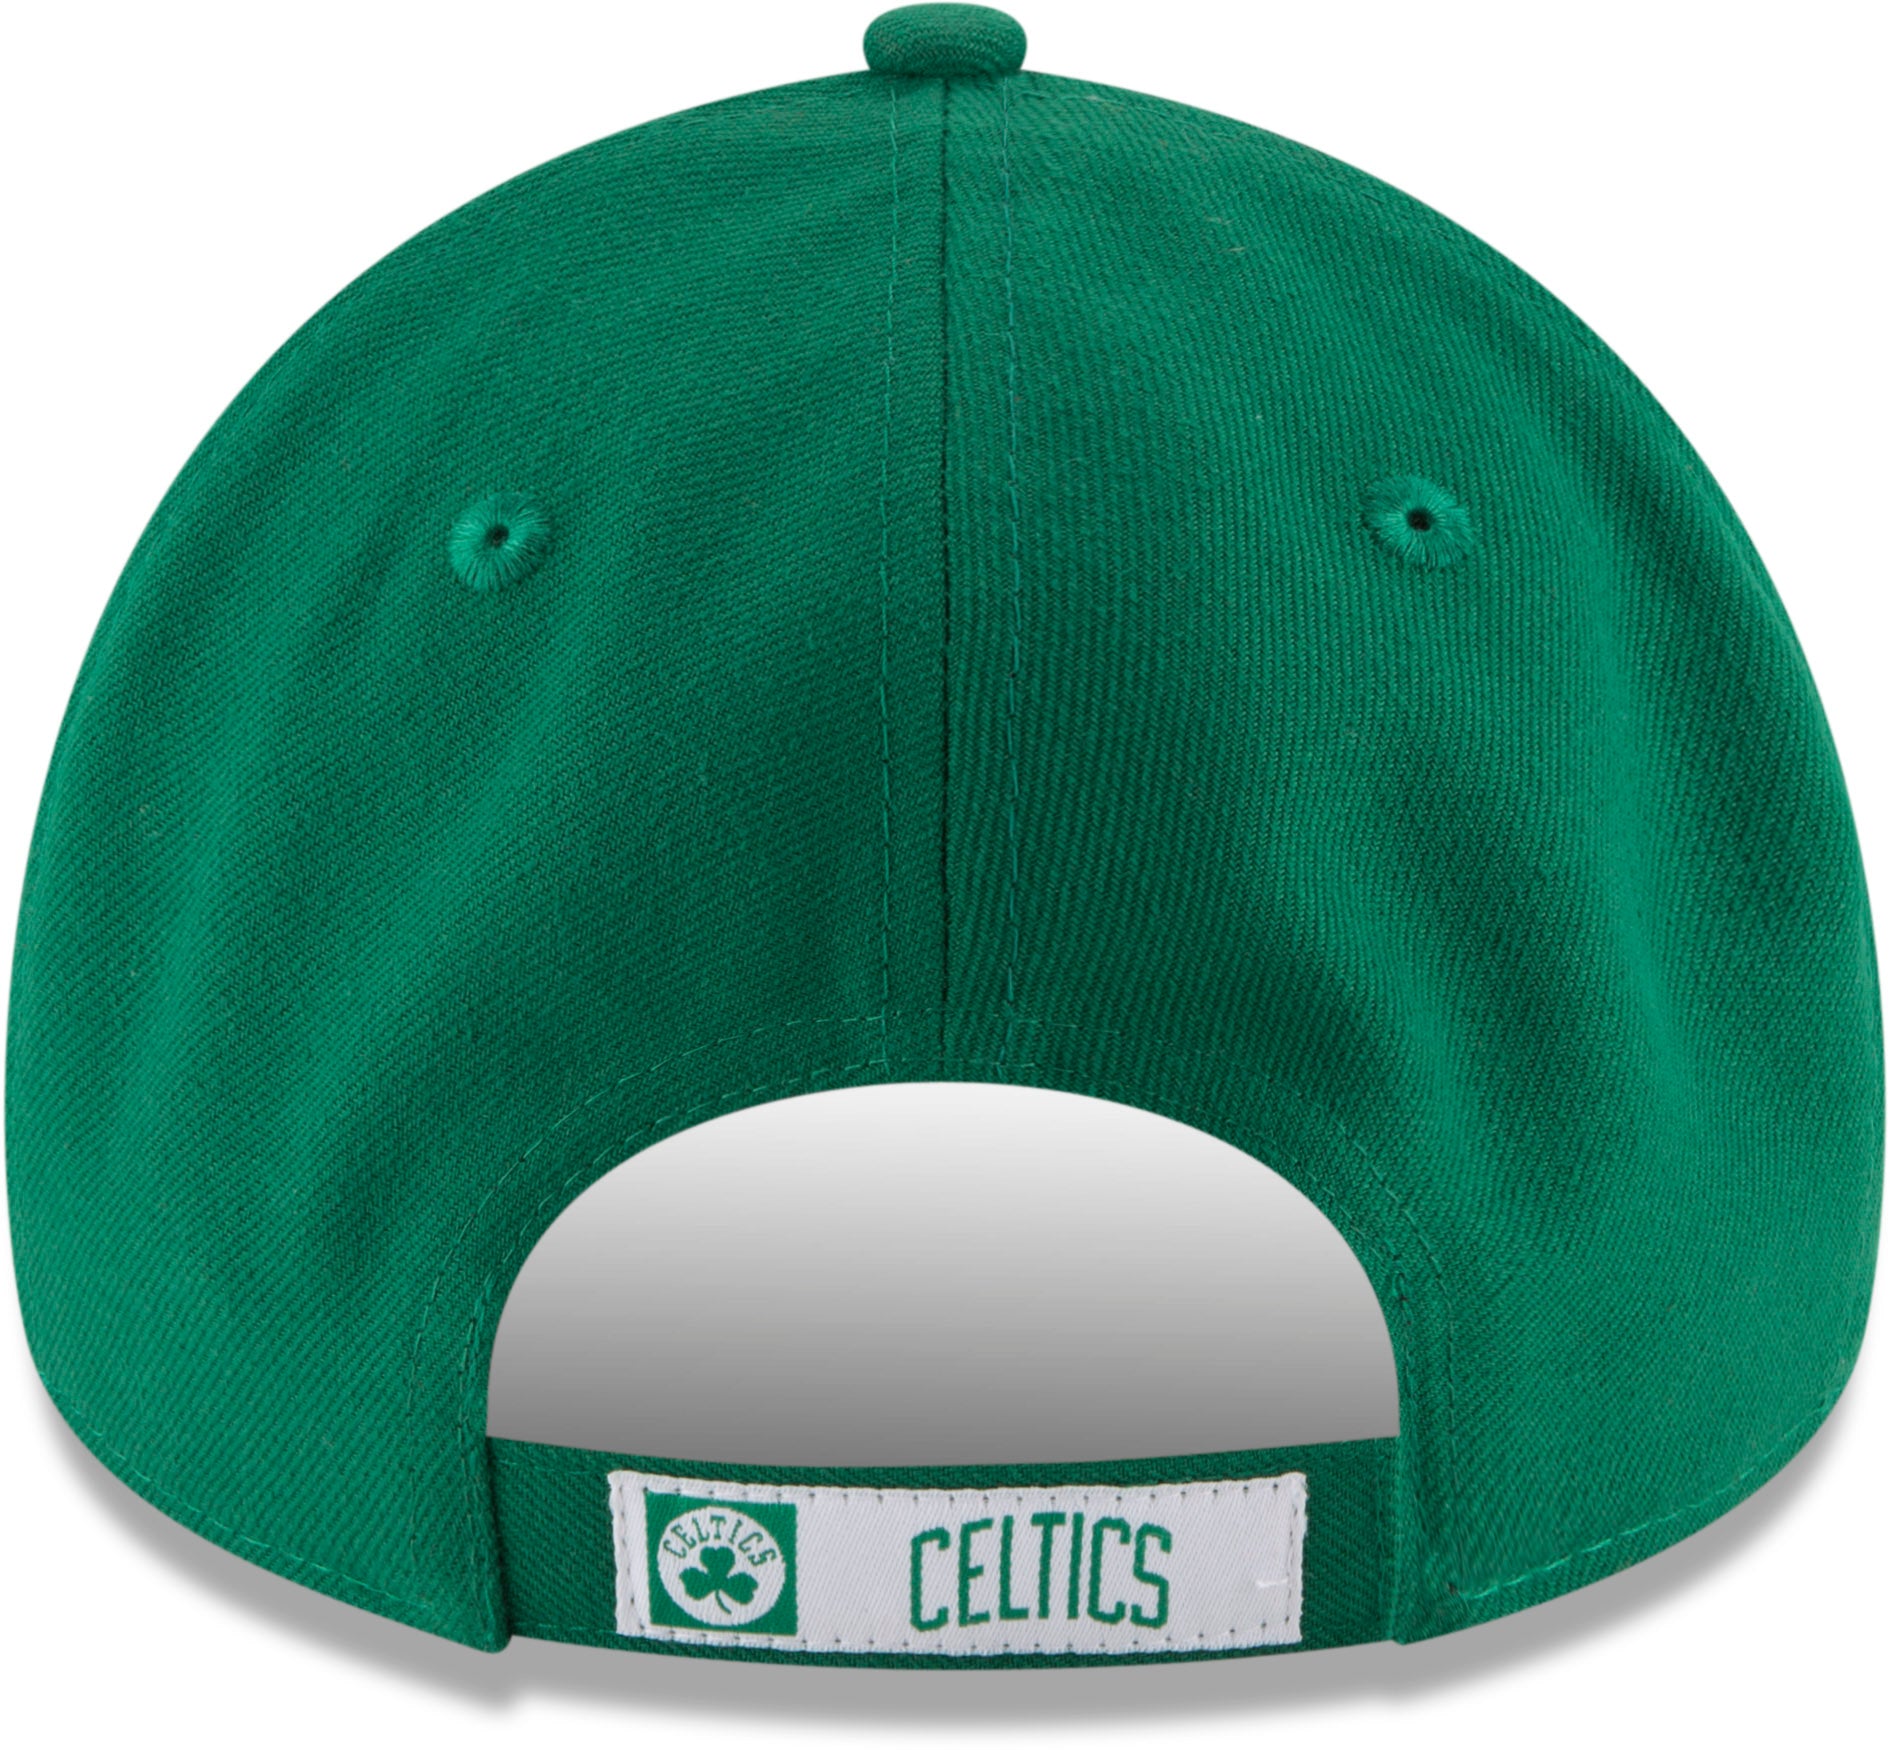  New Era NBA Boston Celtics Men's 9Fifty Team Color